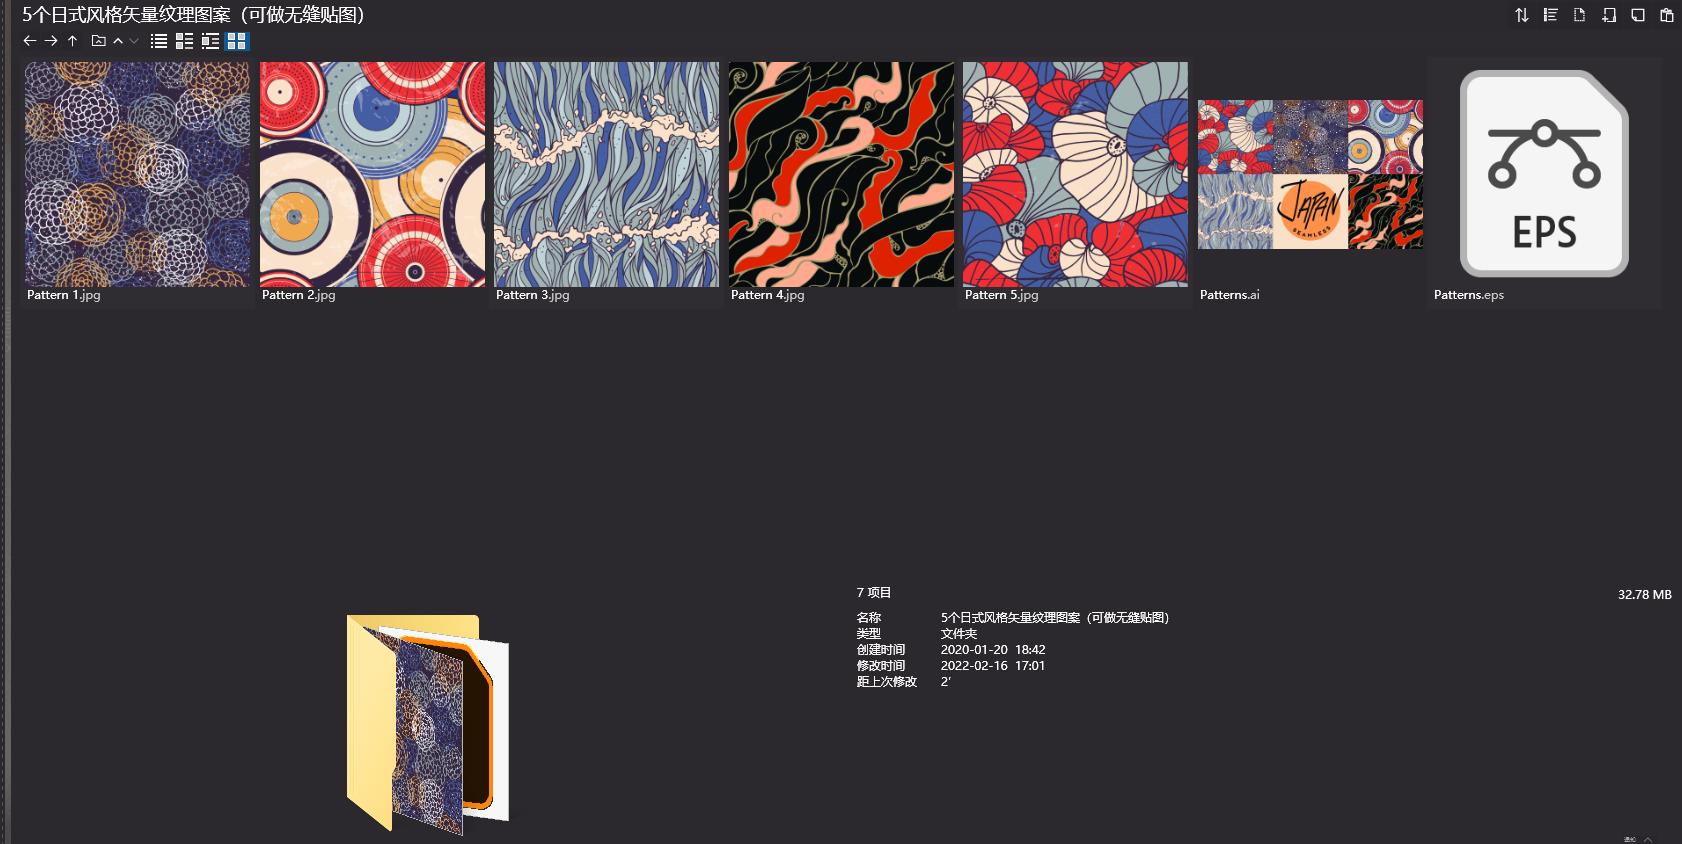 日式紋理圖片,日式紋理貼圖,高品質貼圖,貼圖下載,日式風格矢量紋理圖案,無縫貼圖下載